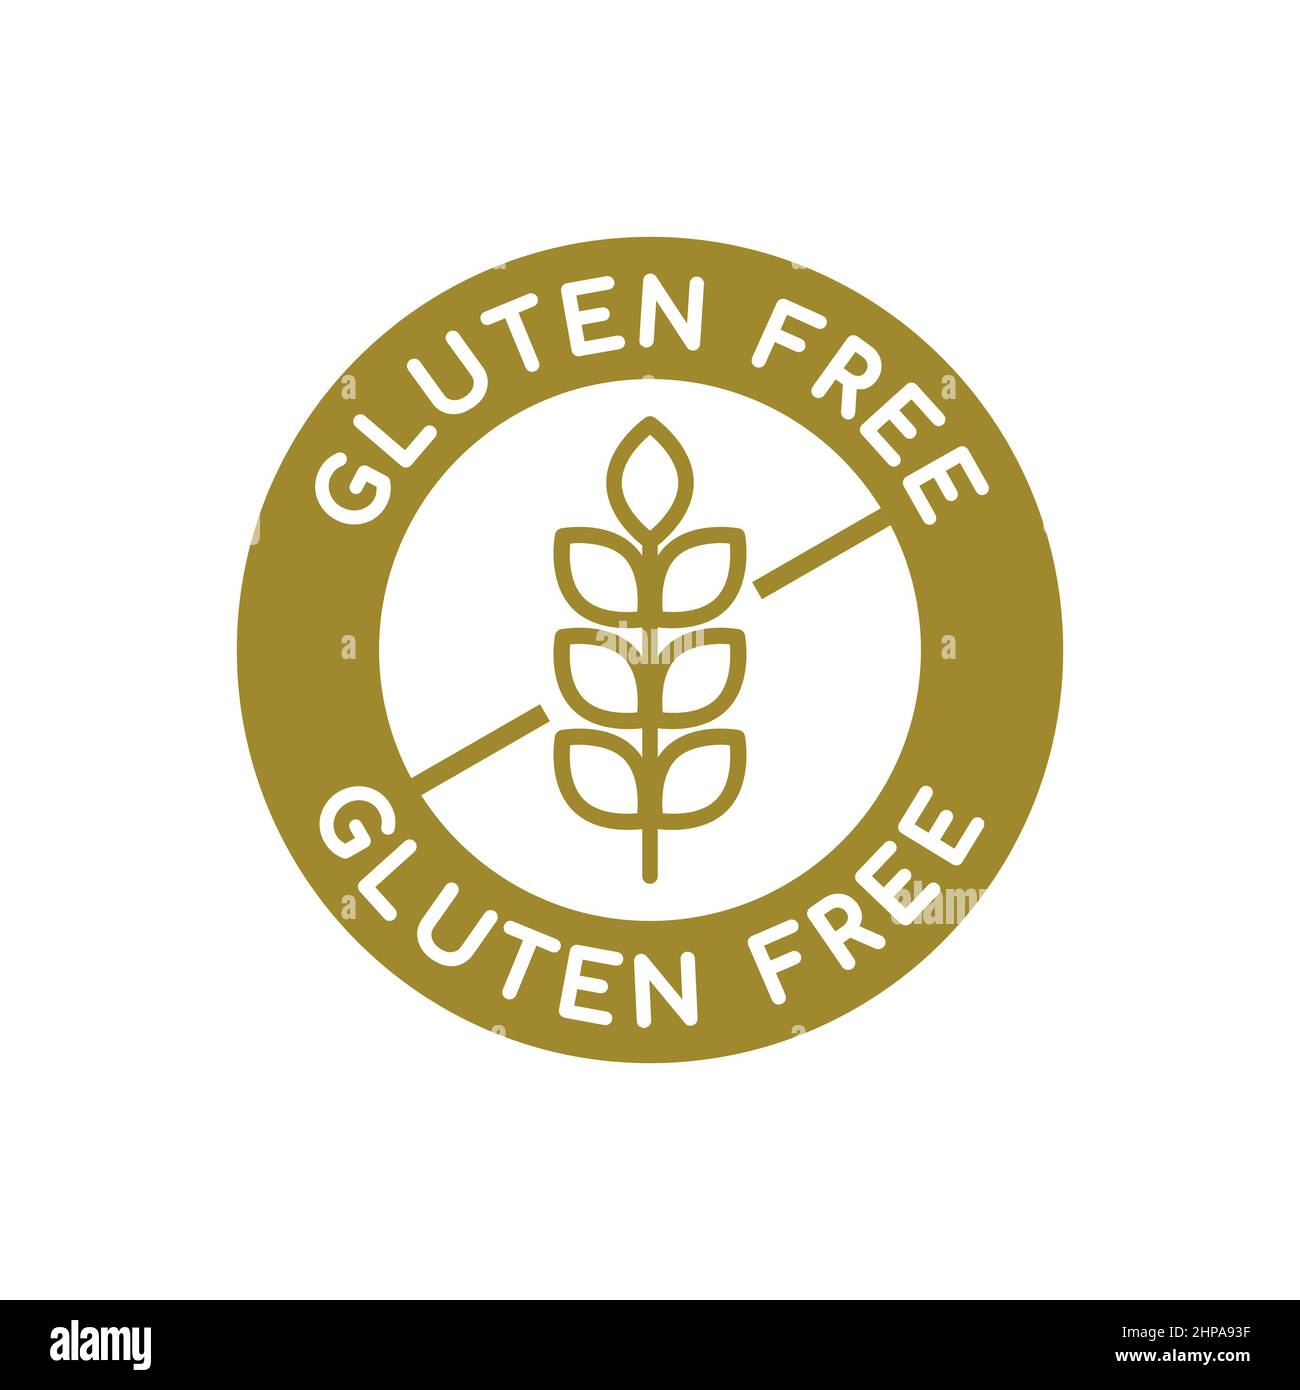 Glutenfreies Logo. Weizensymbol in einem goldenen Kreis. Rundes Etikett mit gekreuzten Weizenzeichen. Siegelgarantie zur Vermeidung von Gluten in Lebensmitteln (Weizen, Gerste, Roggen). Stock Vektor